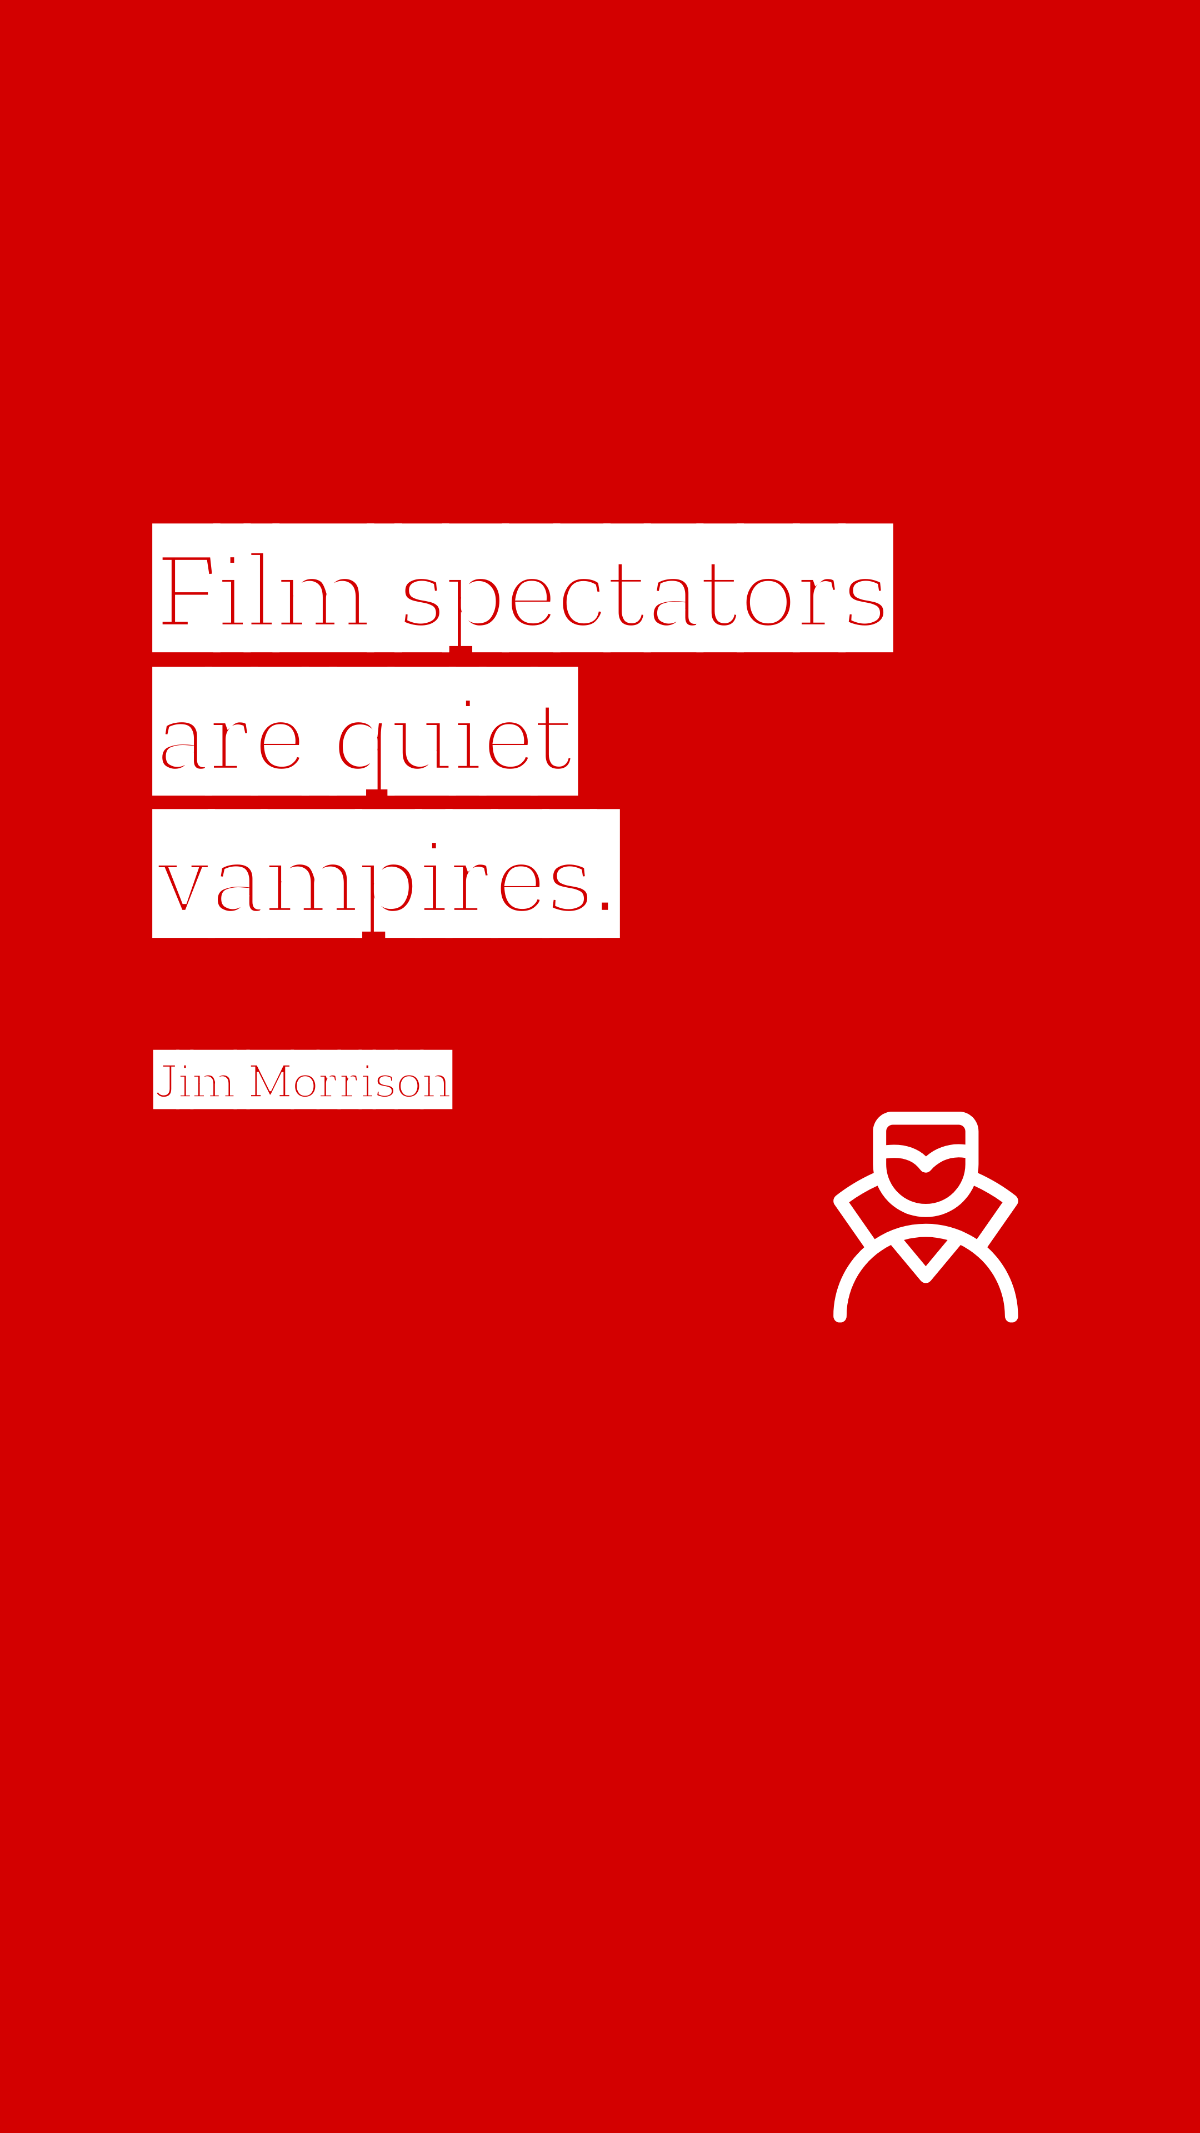 Jim Morrison - Film spectators are quiet vampires.